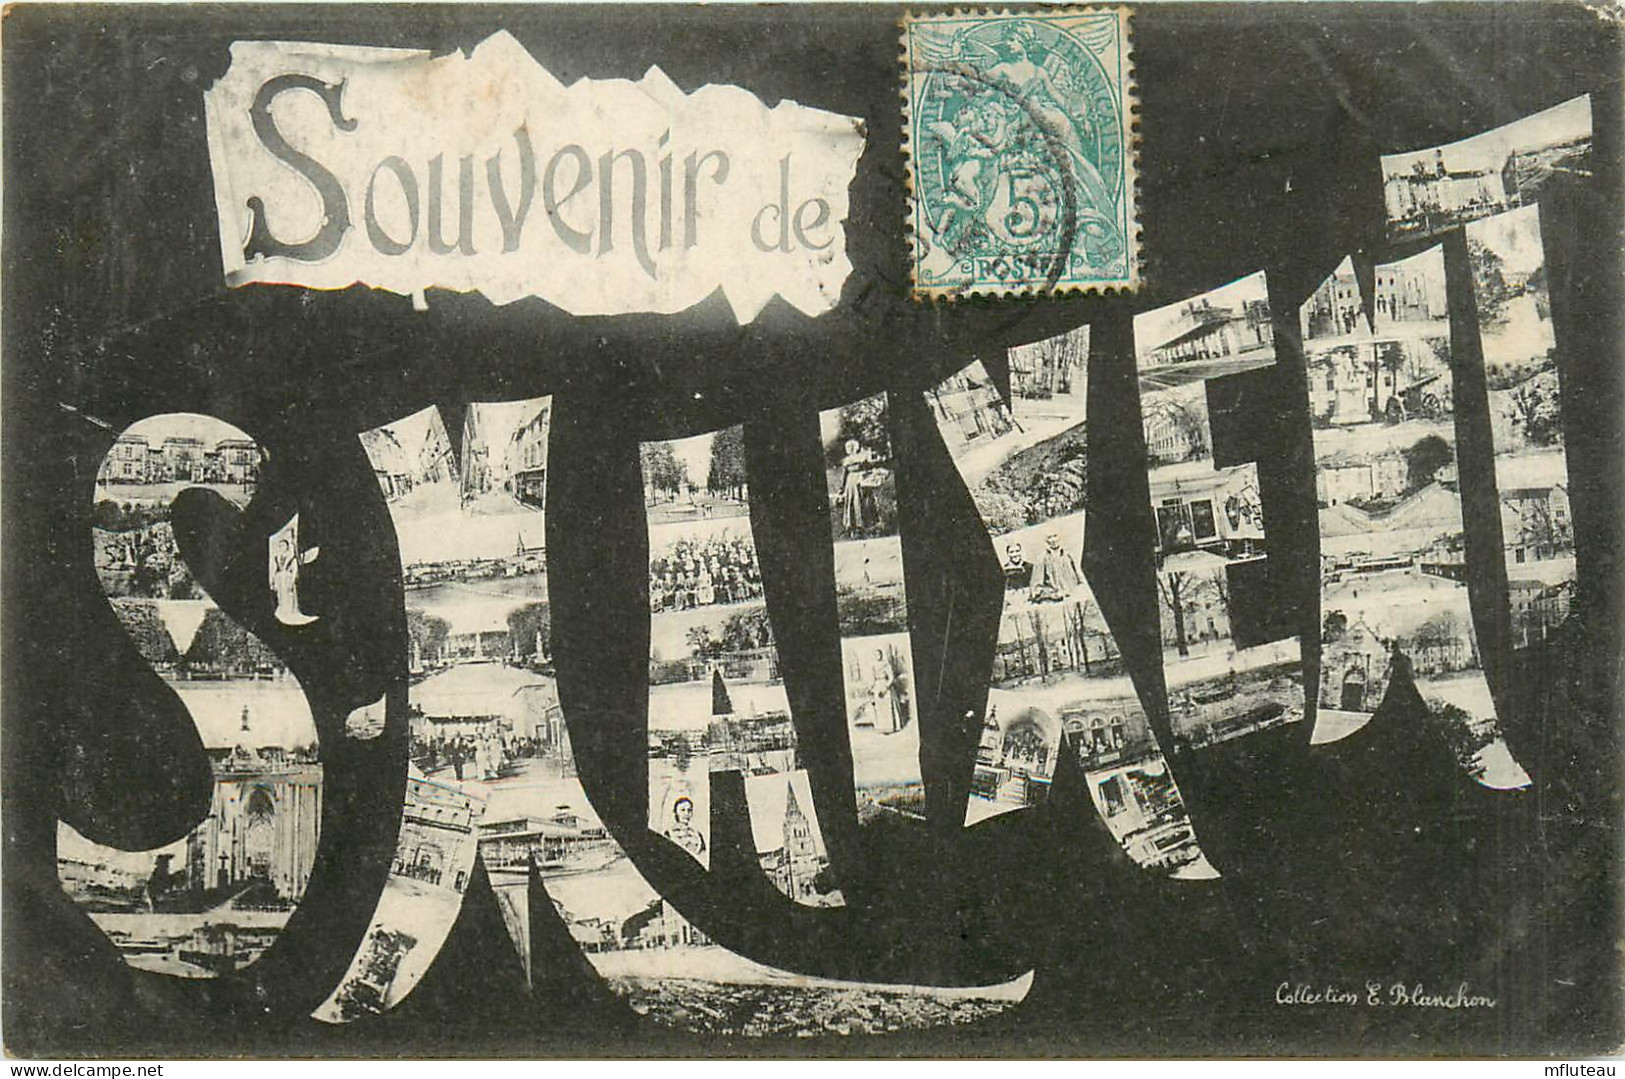 79* ST MAIXENT  Souvenir  Multivues       RL09.0419 - Saint Maixent L'Ecole